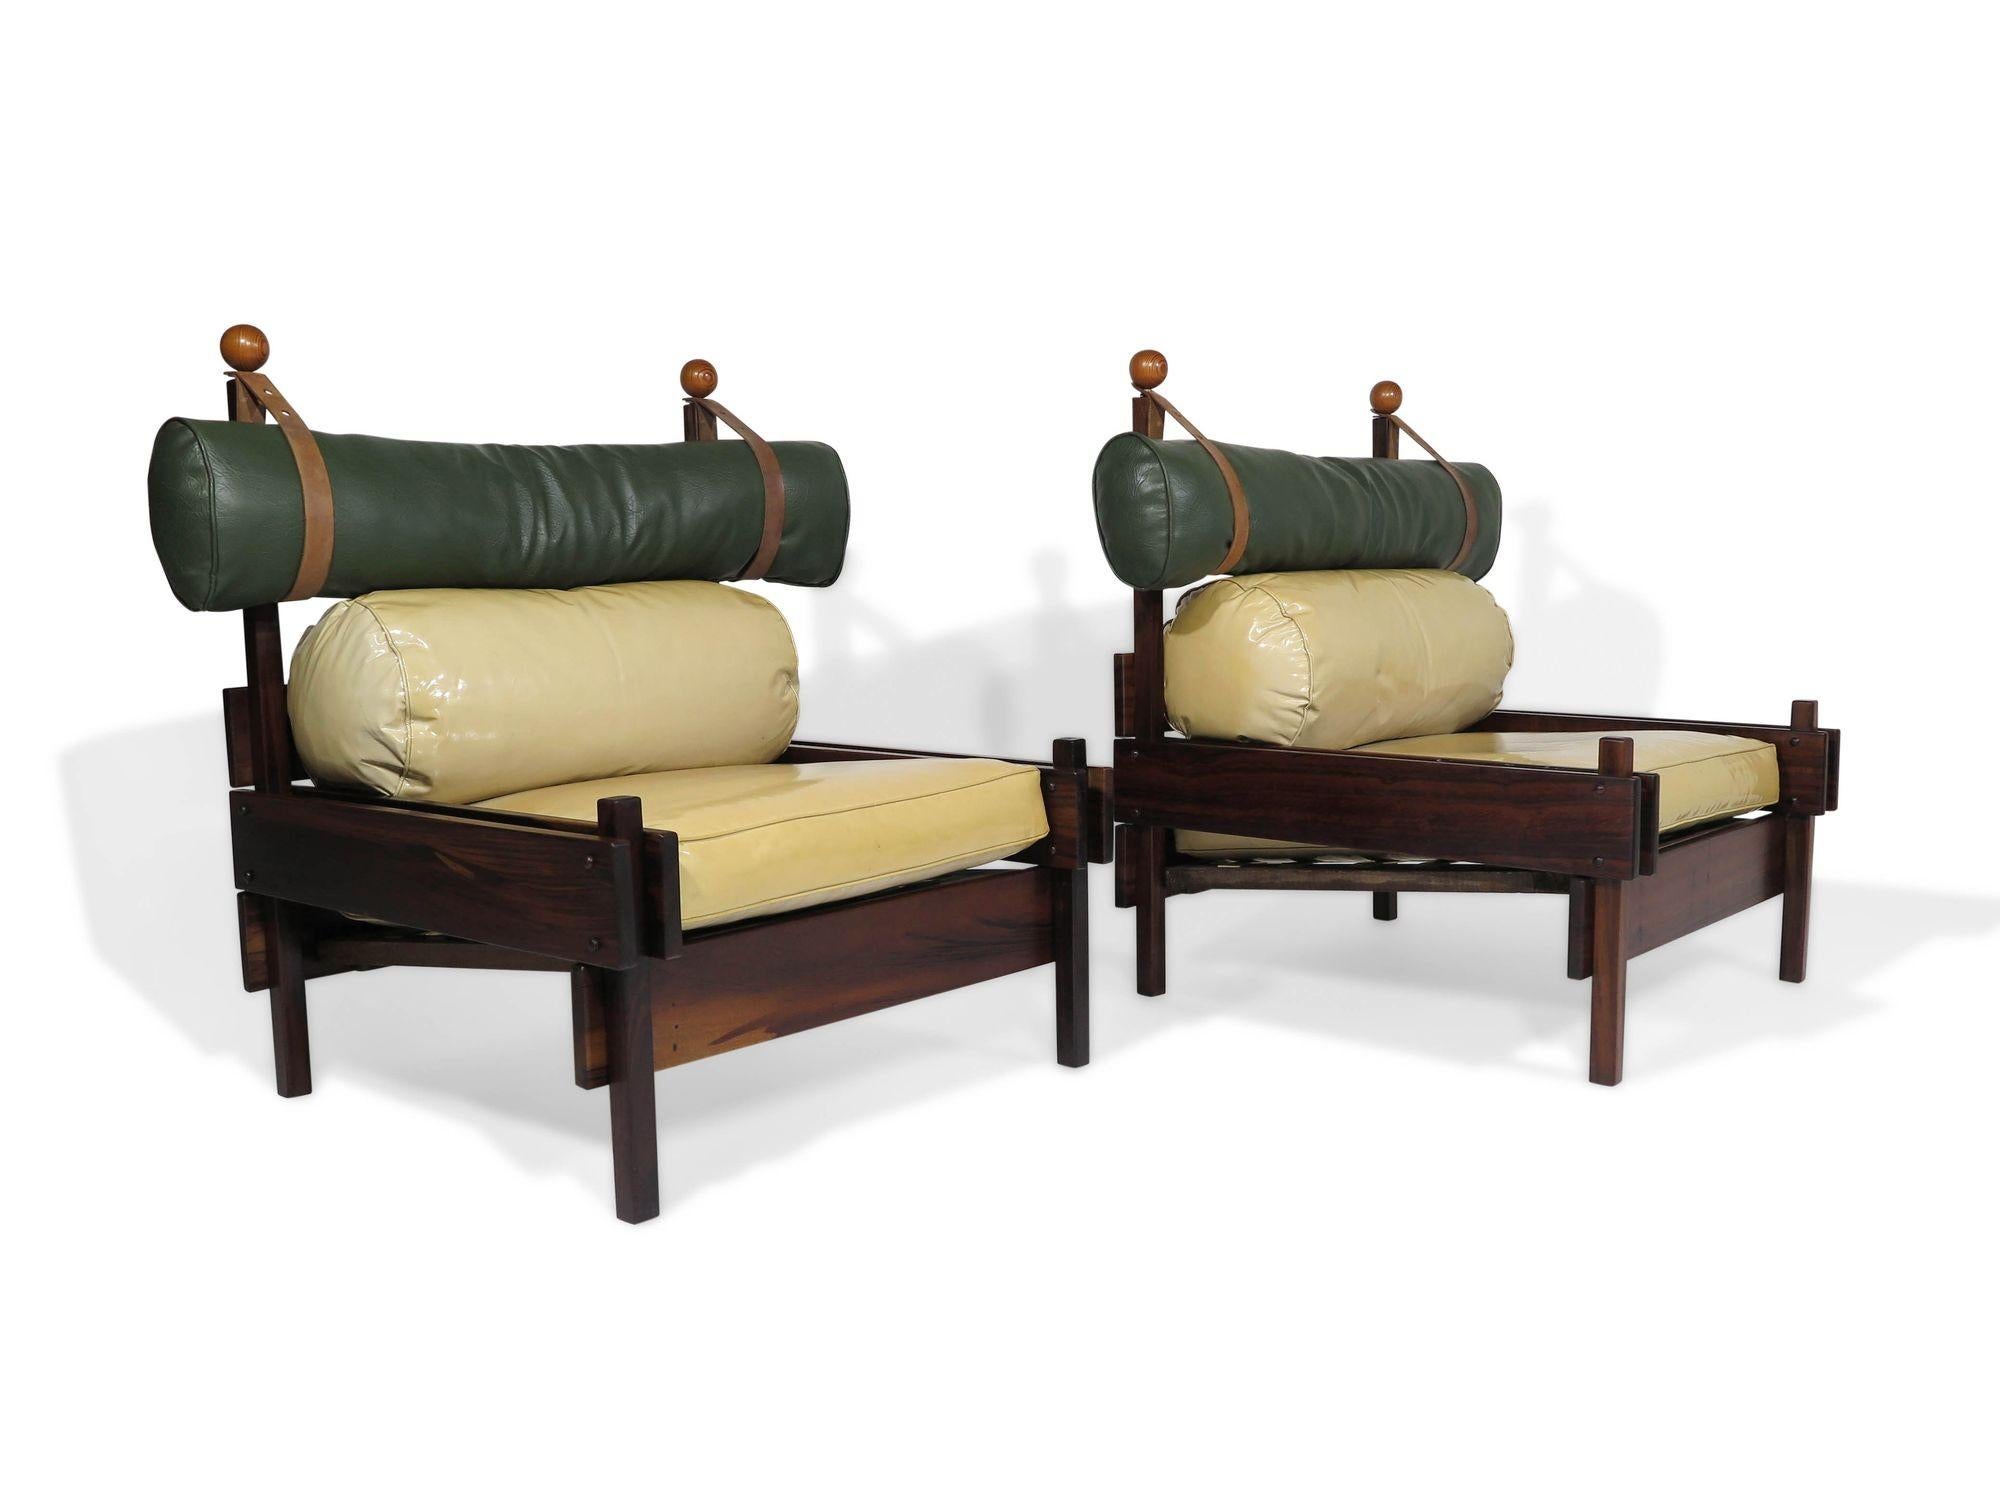 Beeindruckendes Paar Sergio Rodrigues Tonico Lounge Chairs, hergestellt von OCA/Meia-Pataca in Brasilien, 1962. Die Stühle sind aus massivem Imbuia-Holz gefertigt und verfügen über die originalen Vinylkissen mit Lederriemen für die skulpturale